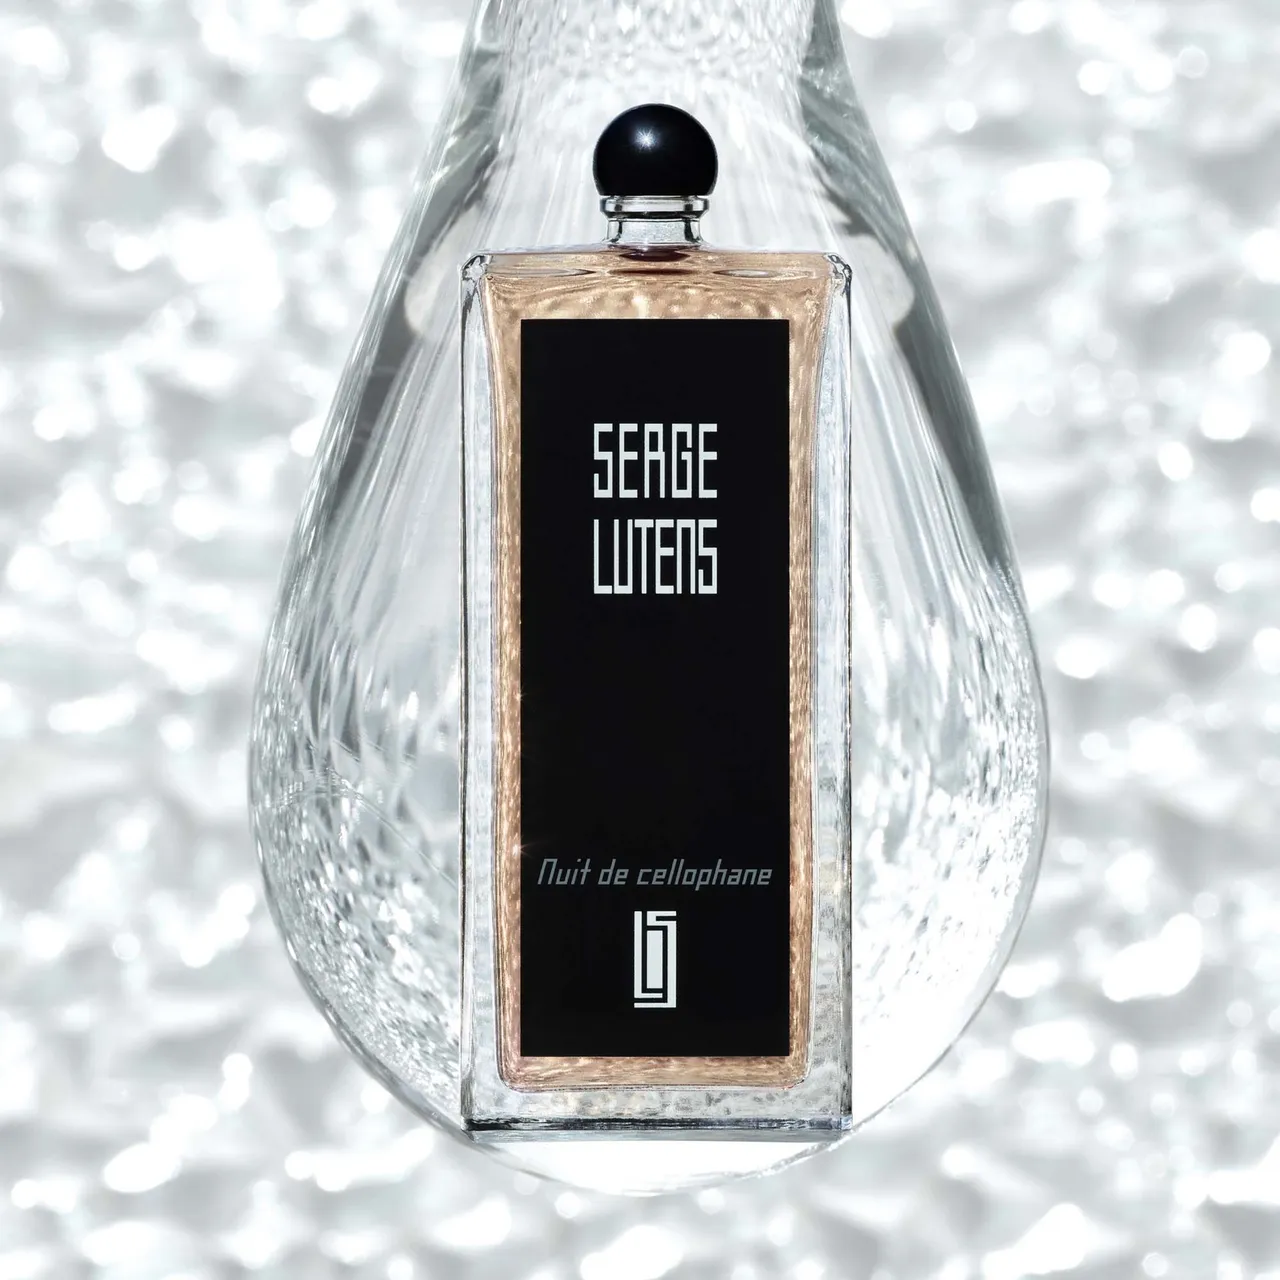 Serge Lutens Nuit de Cellophane Eau de Parfum - 50ml